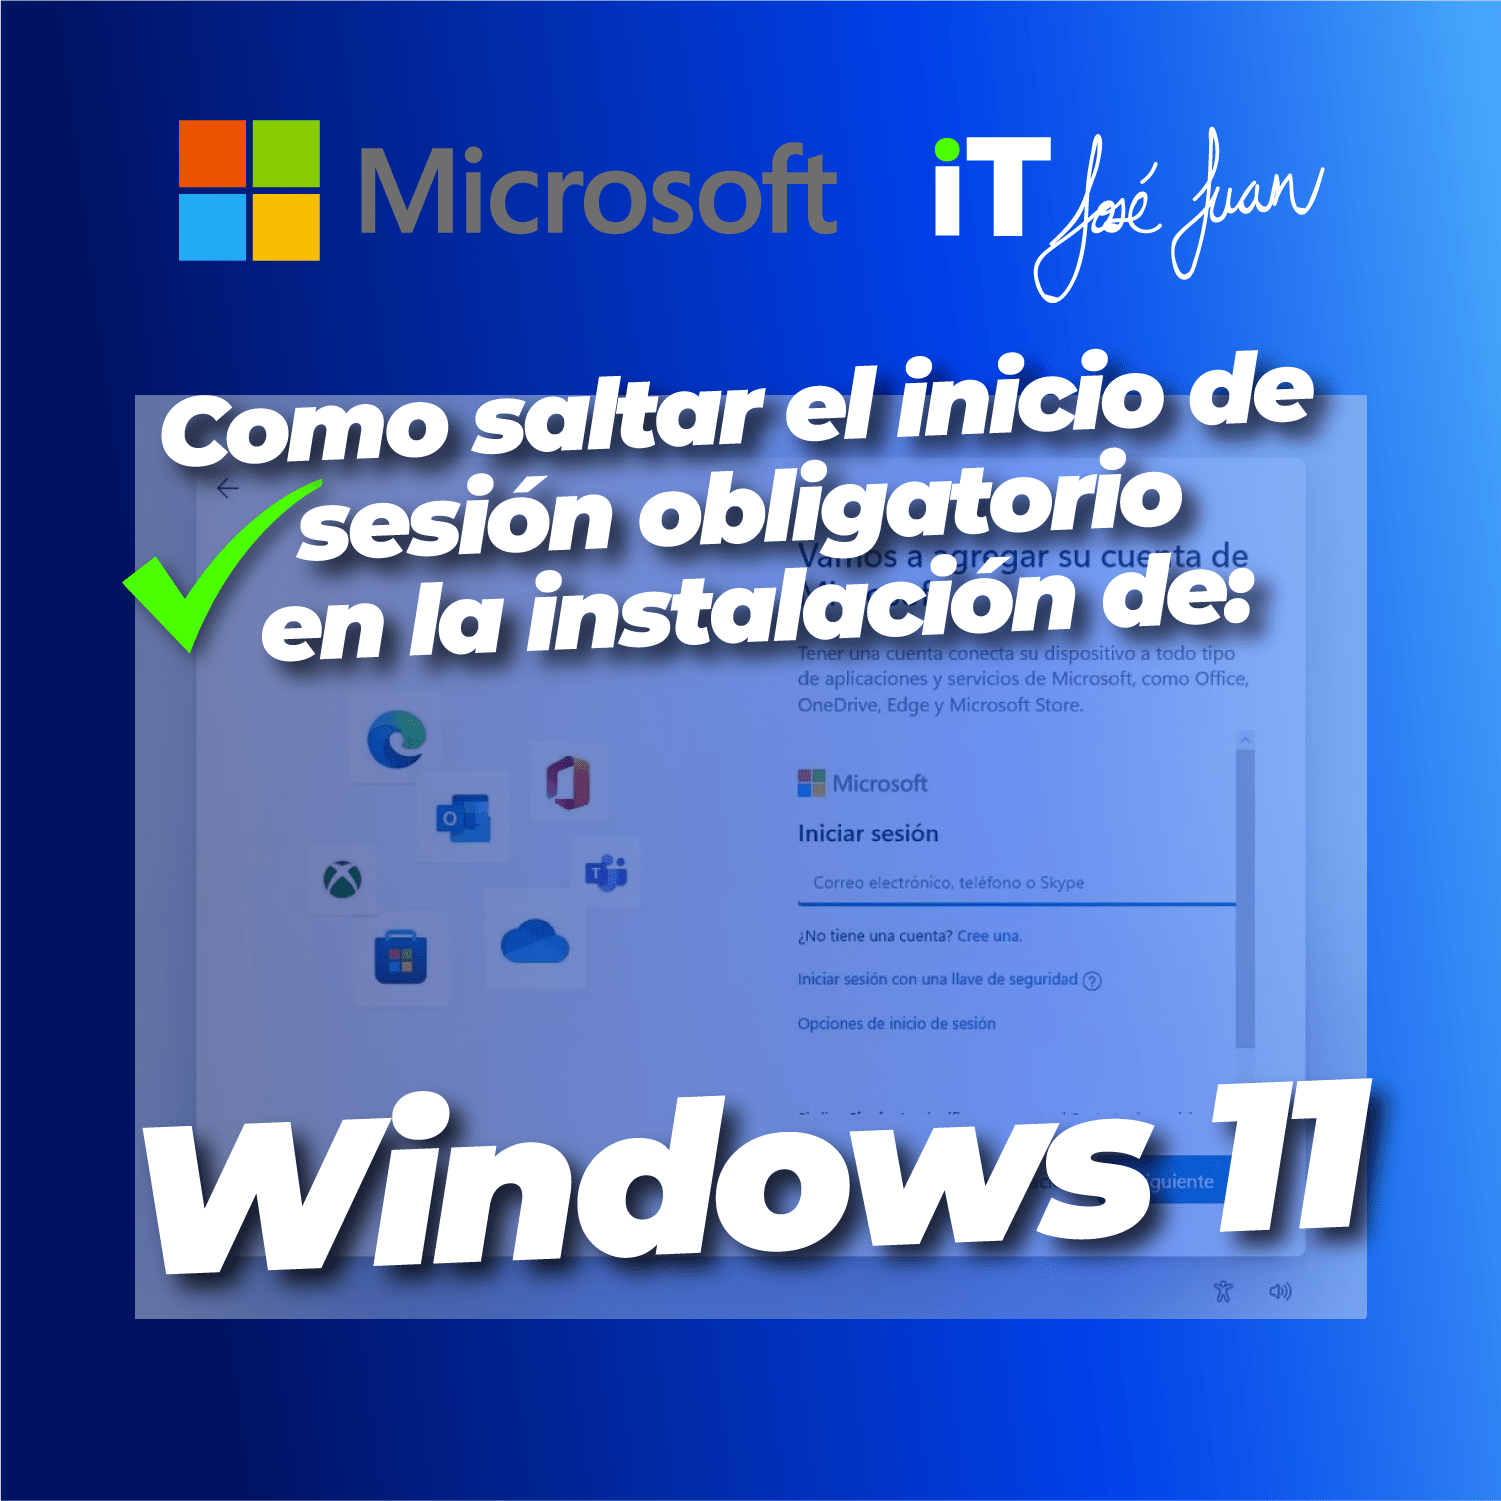 Desbloquea Windows 11: Cómo Saltar el Inicio Obligatorio de Sesión en la Instalación